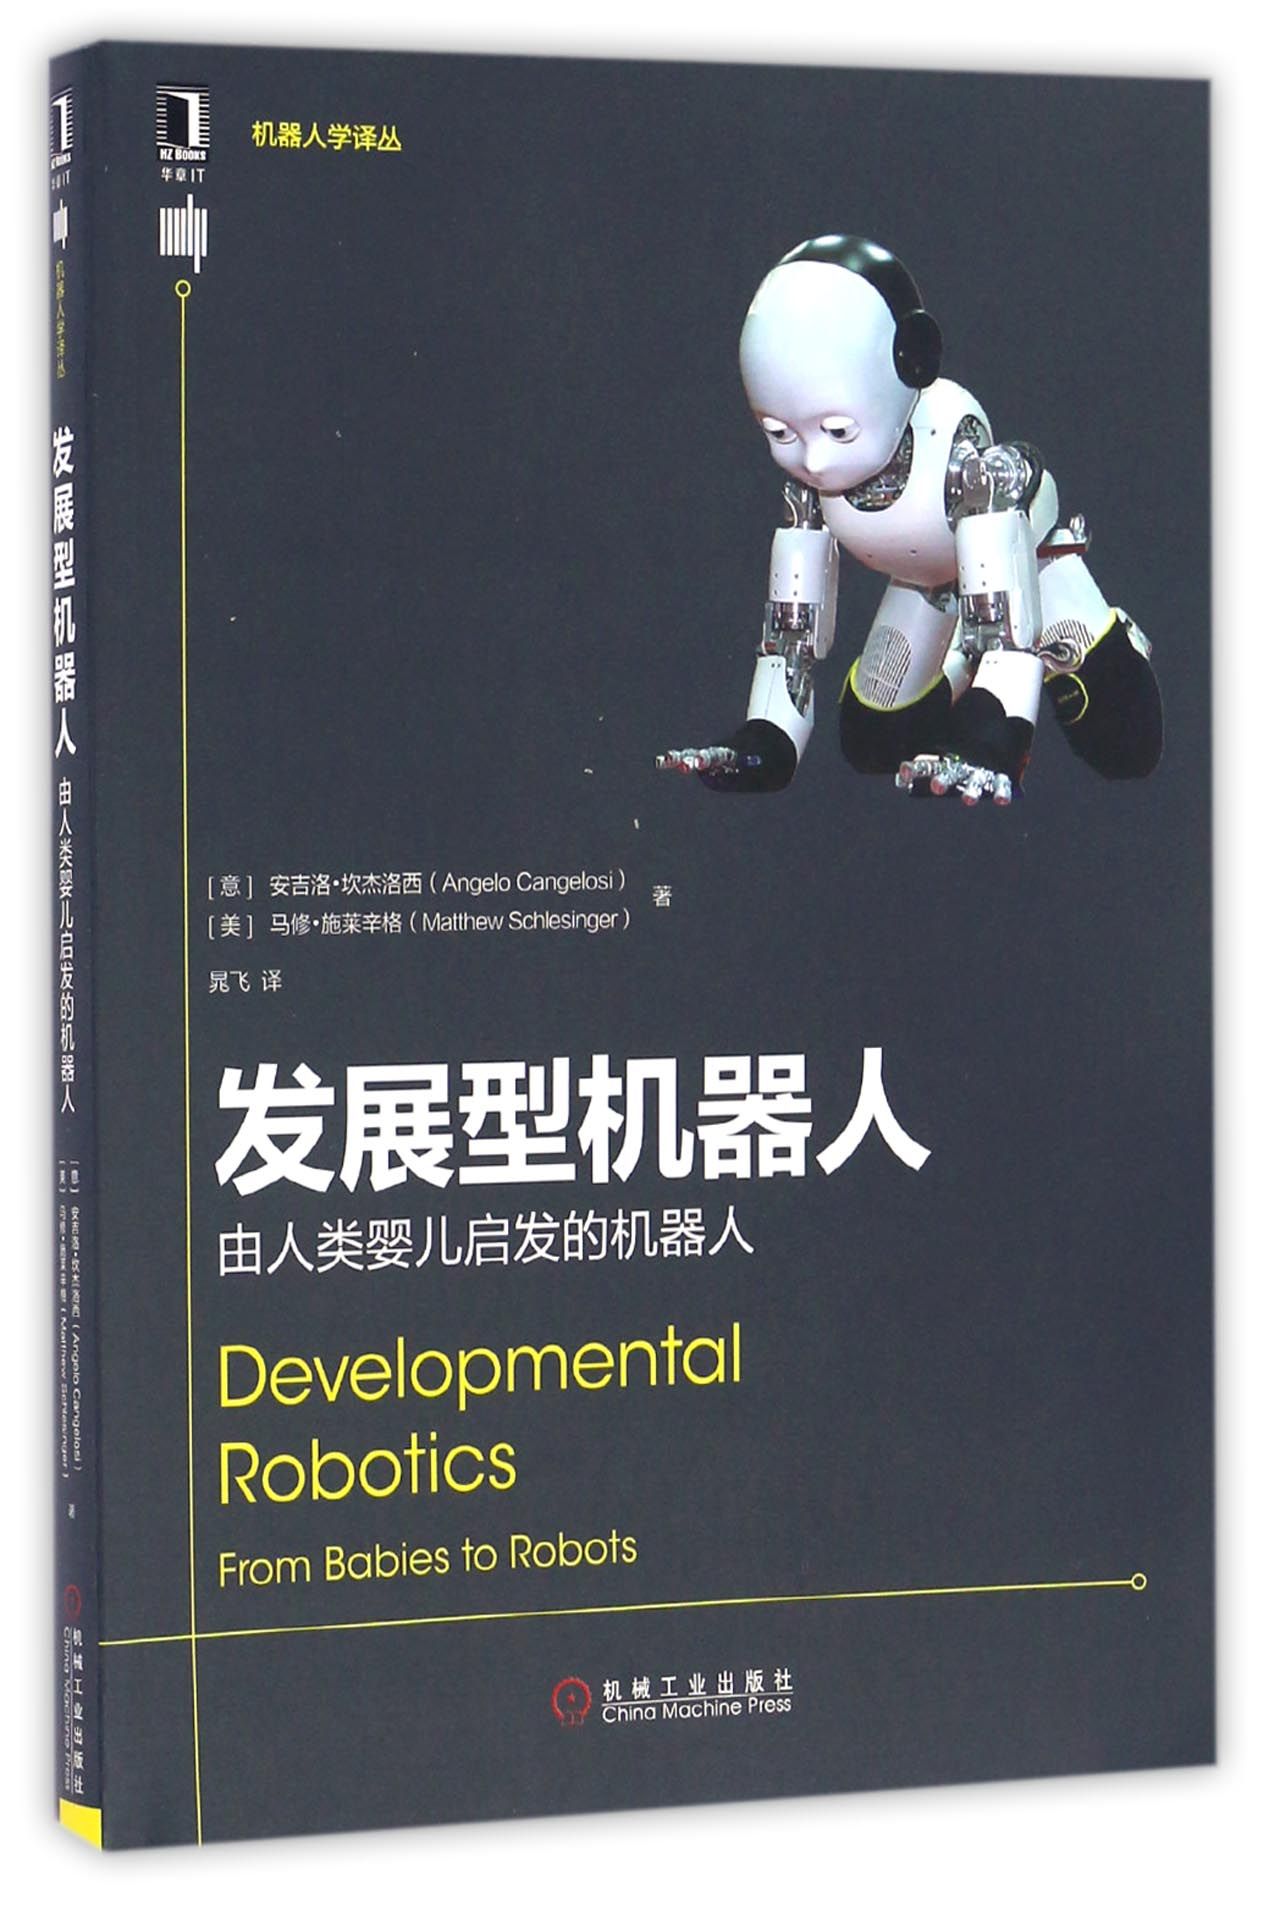 现货 发展型机器人(由人类婴儿启发的机器人)/机器人学译丛 机械工业出版社BK